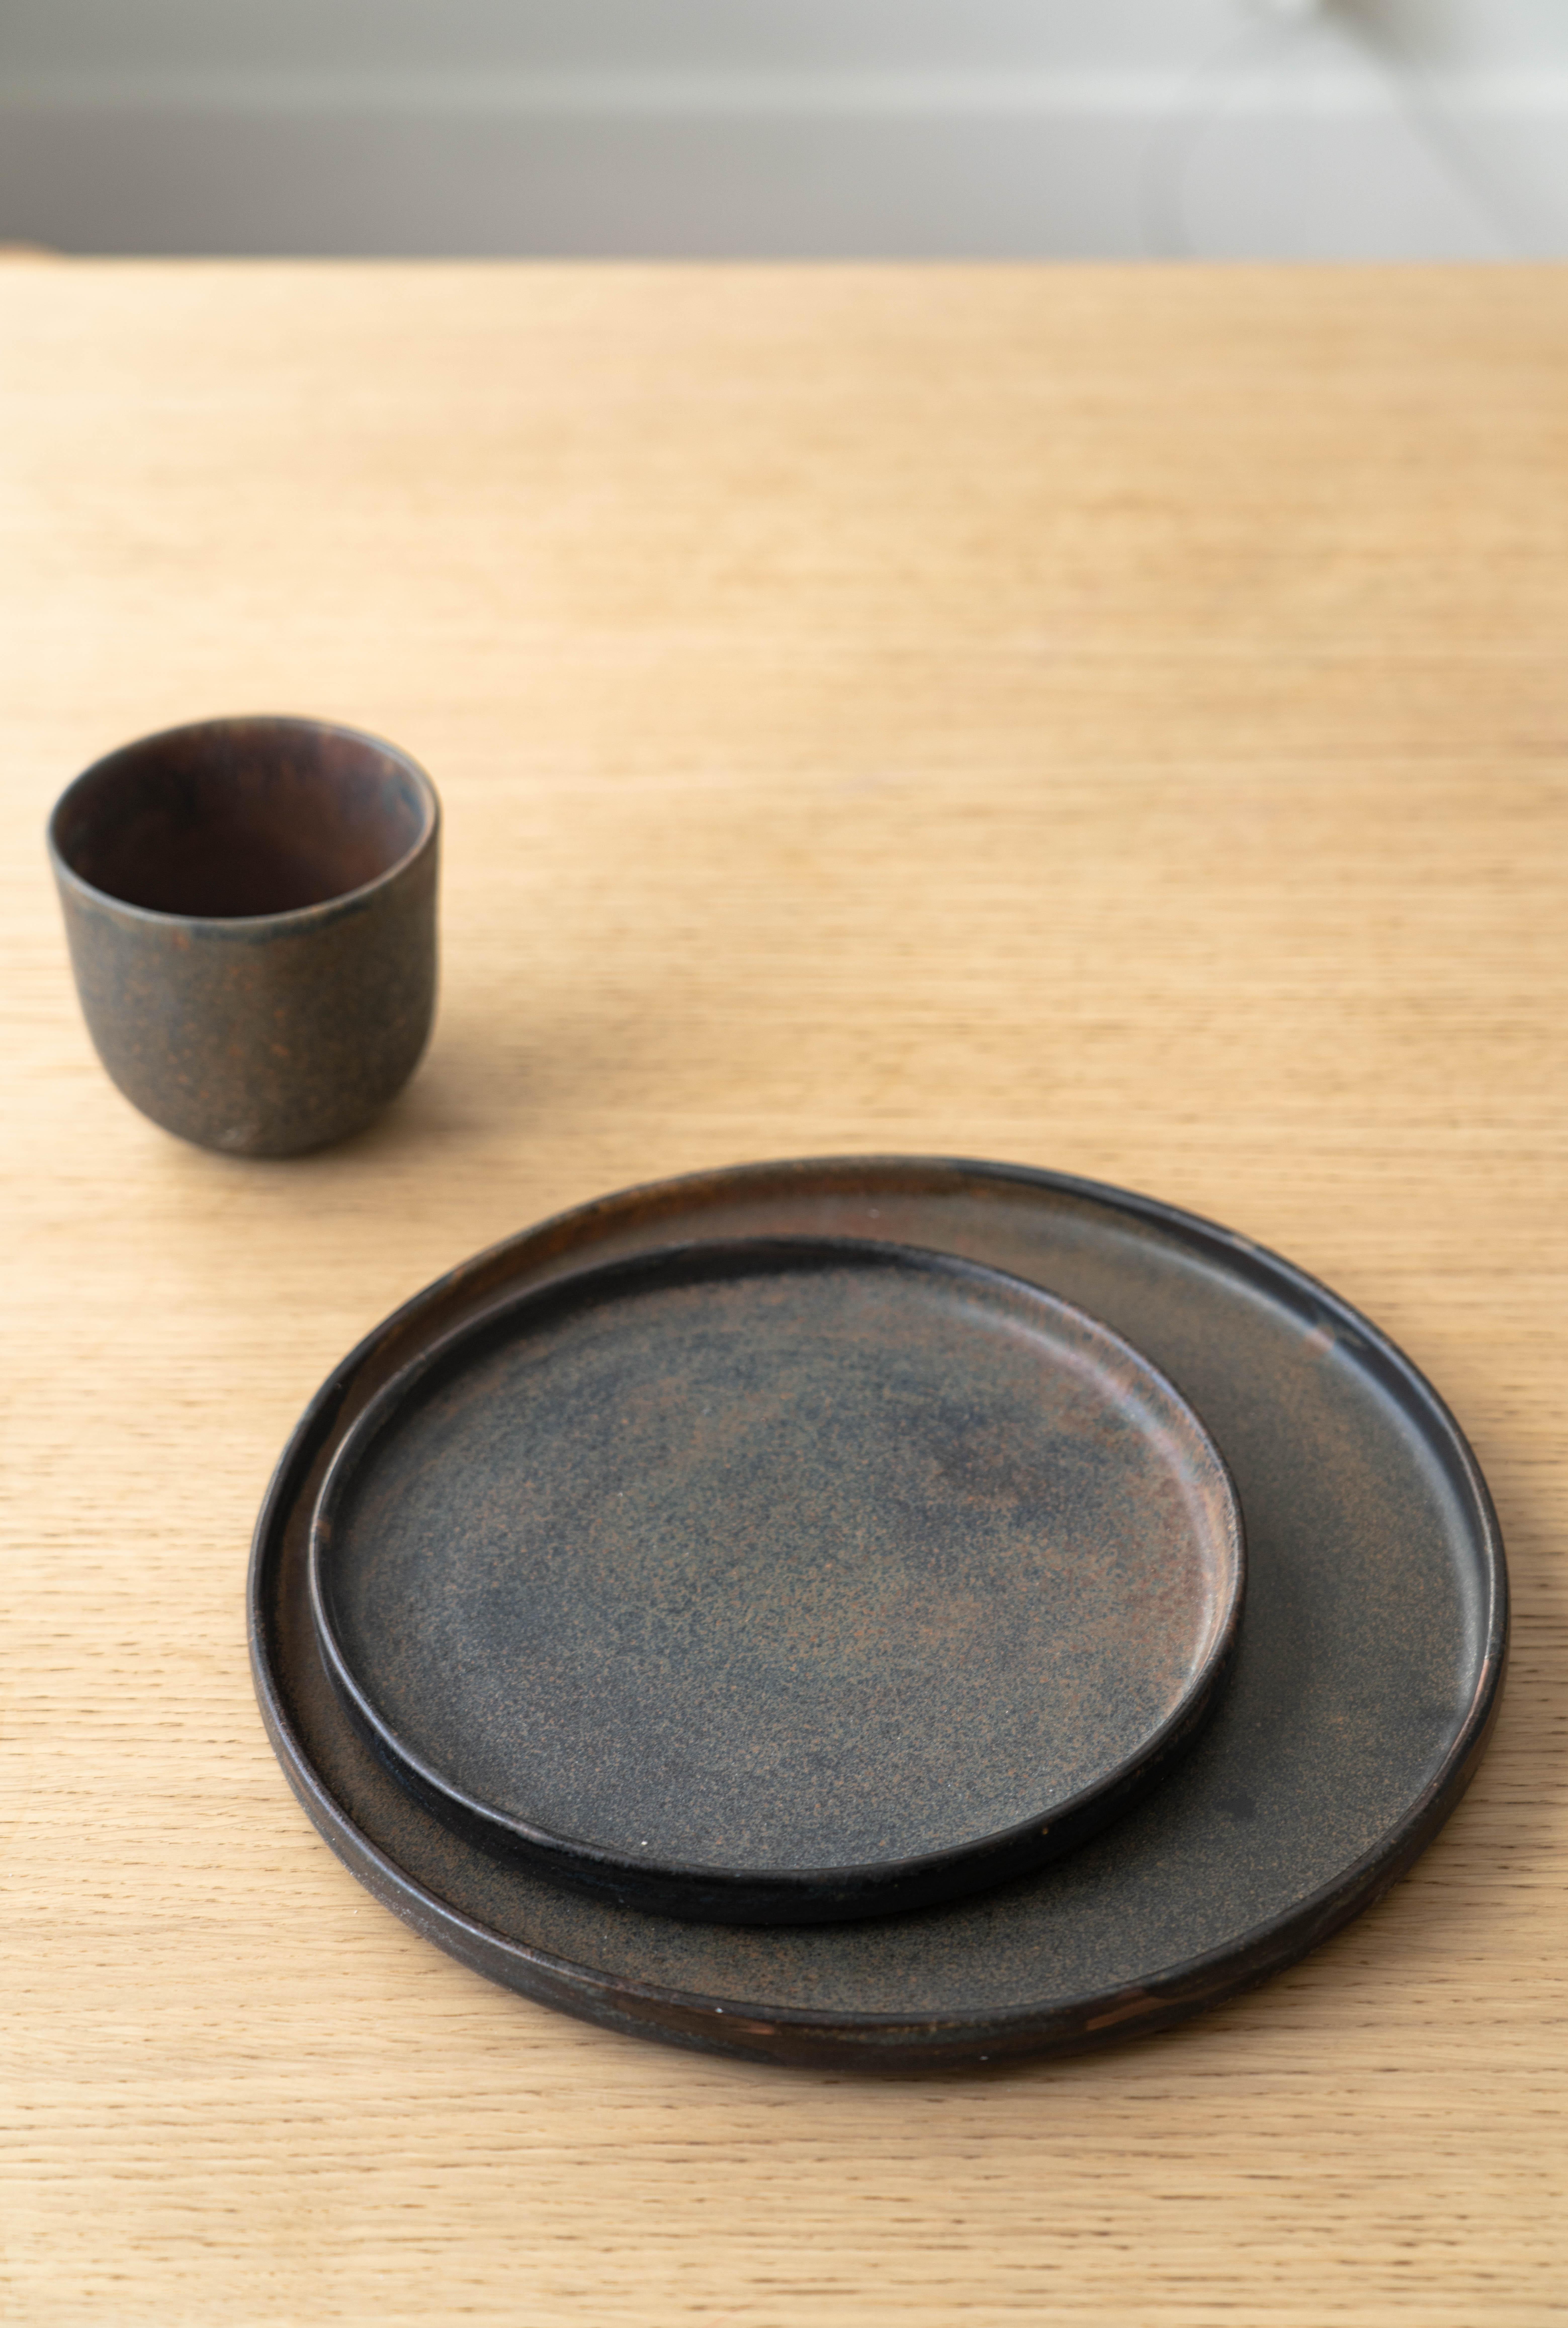 La vaisselle marron-noir mat apporte une touche de poterie à l'heure des repas. Trempé à la main dans une glaçure réactive qui tourbillonne de façon unique sur chaque pièce. Le bord bas et le style simple ne font qu'ajouter du caractère à cette